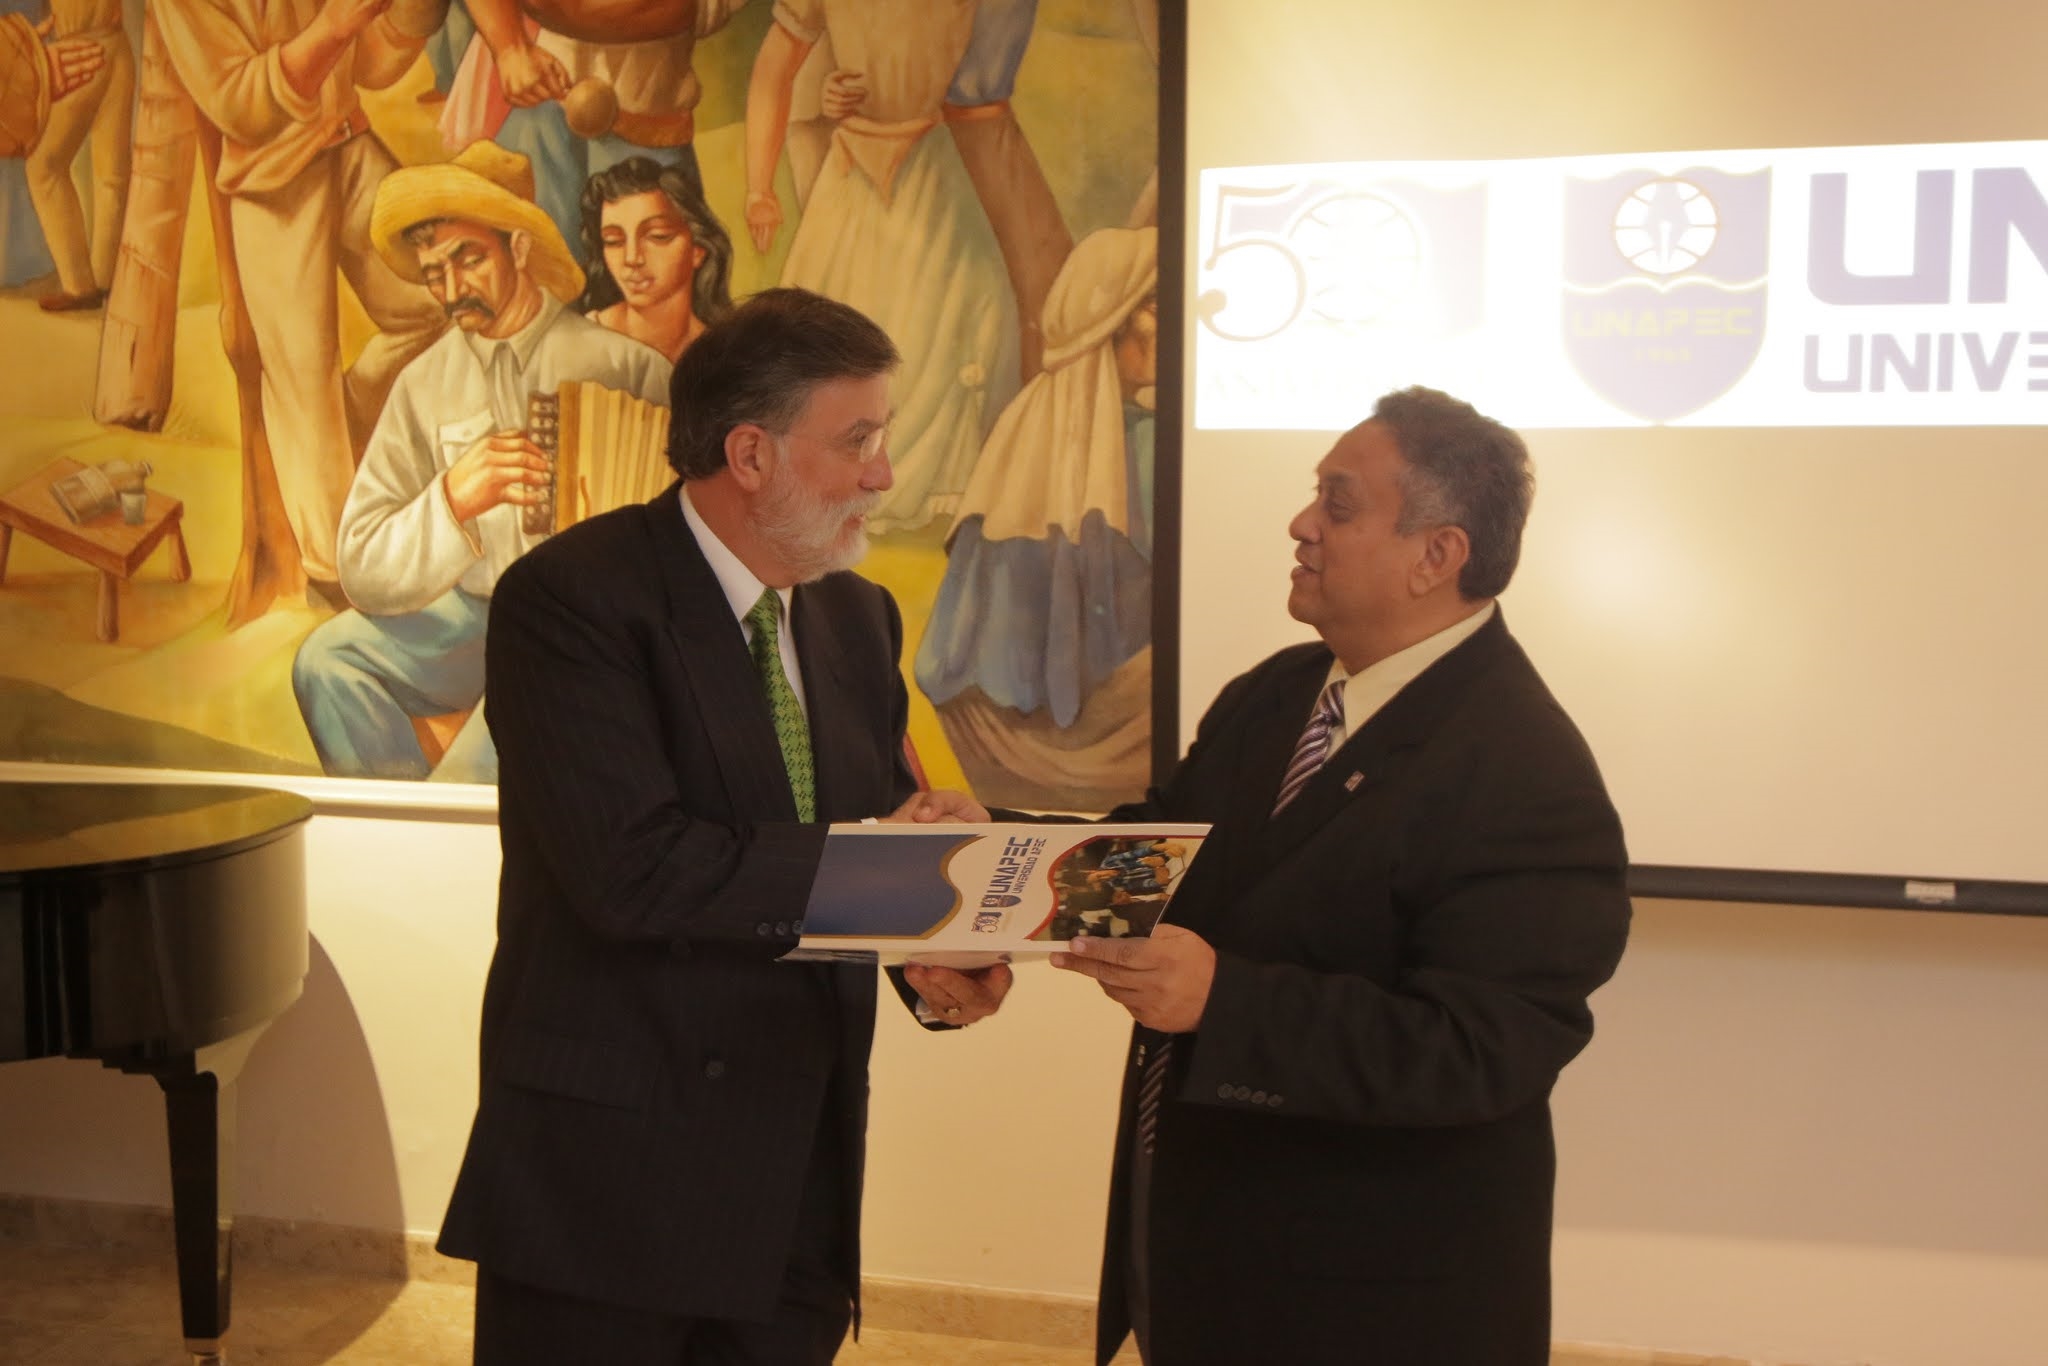 El Dr. Jorge Alejandro Mier recibió un obsequio por su participación de manos del Sr. César Caracas, director de Educación Continuada.